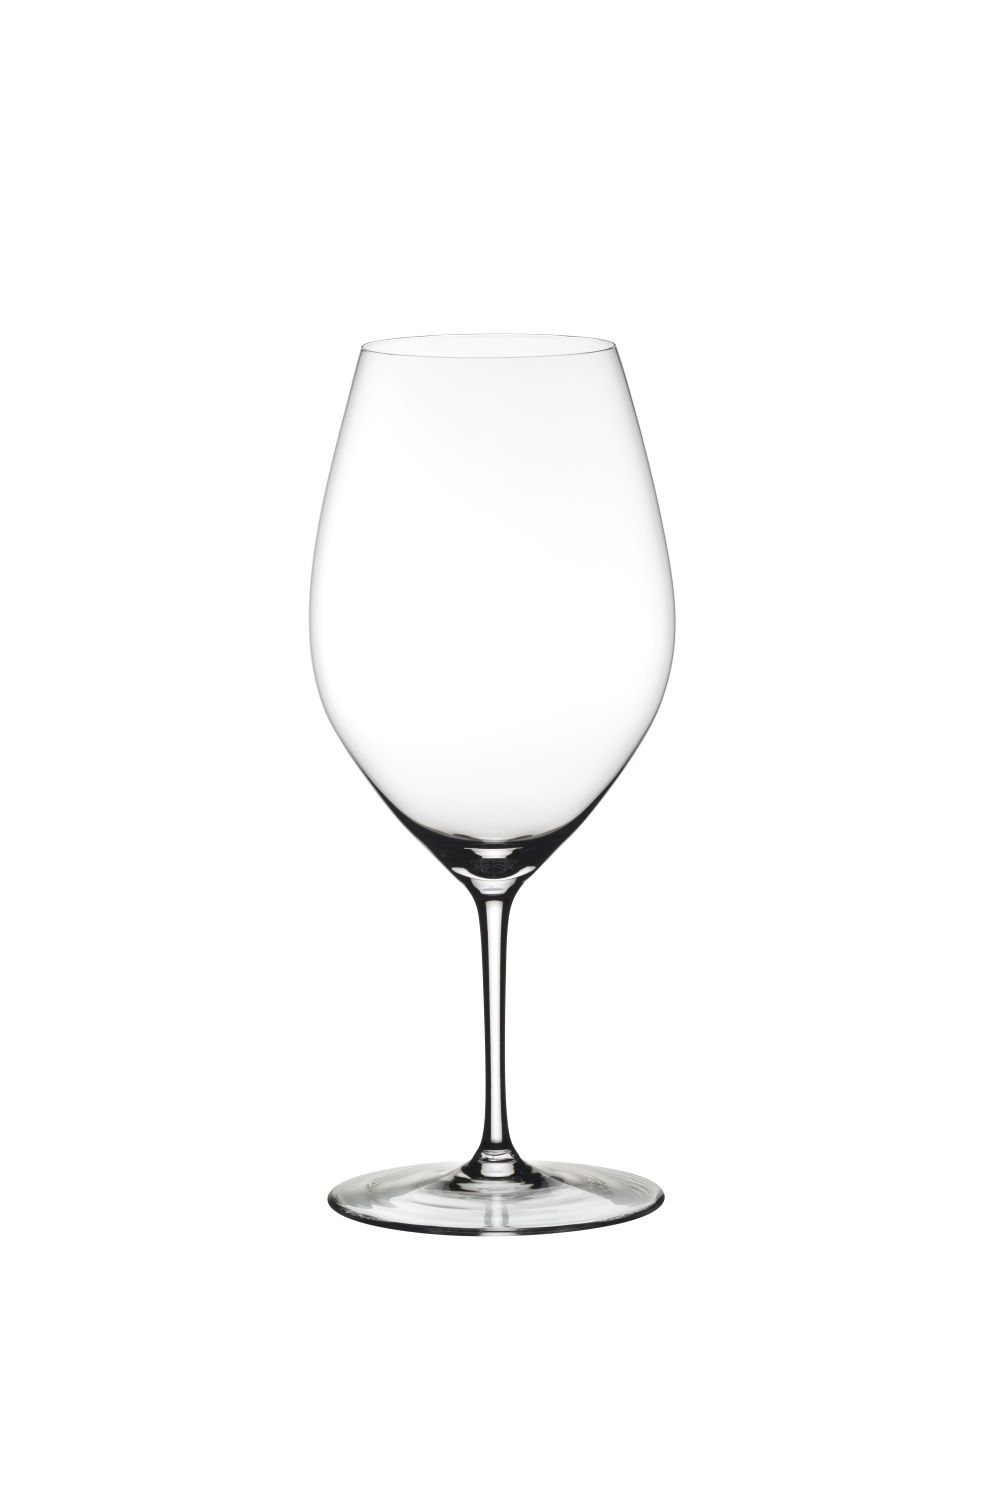 Taça Riedel 001, taça para vinhos